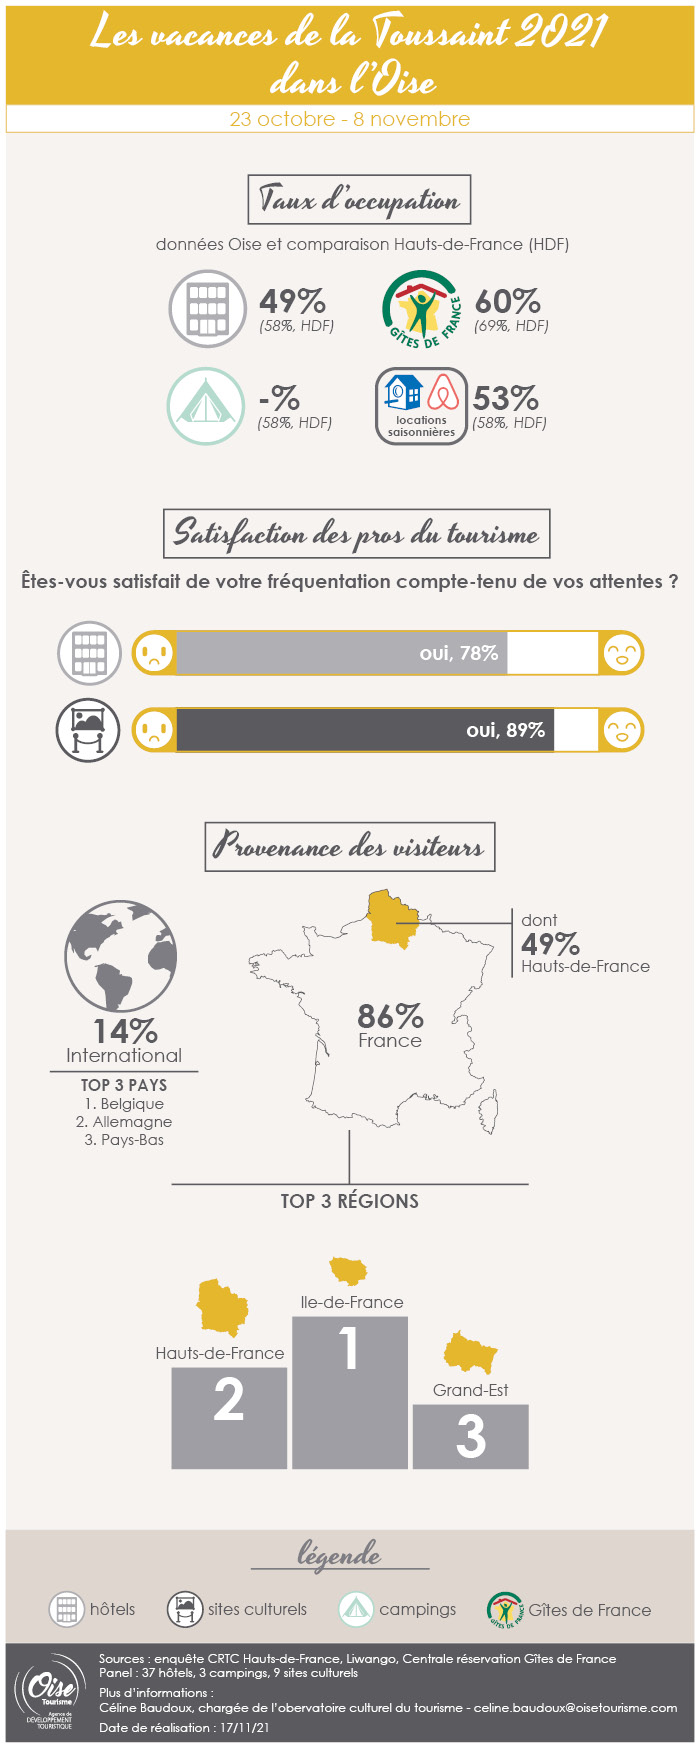 Infographie-oisetourisme-chiffres-frequentation-oise-vacances-toussaint-2021